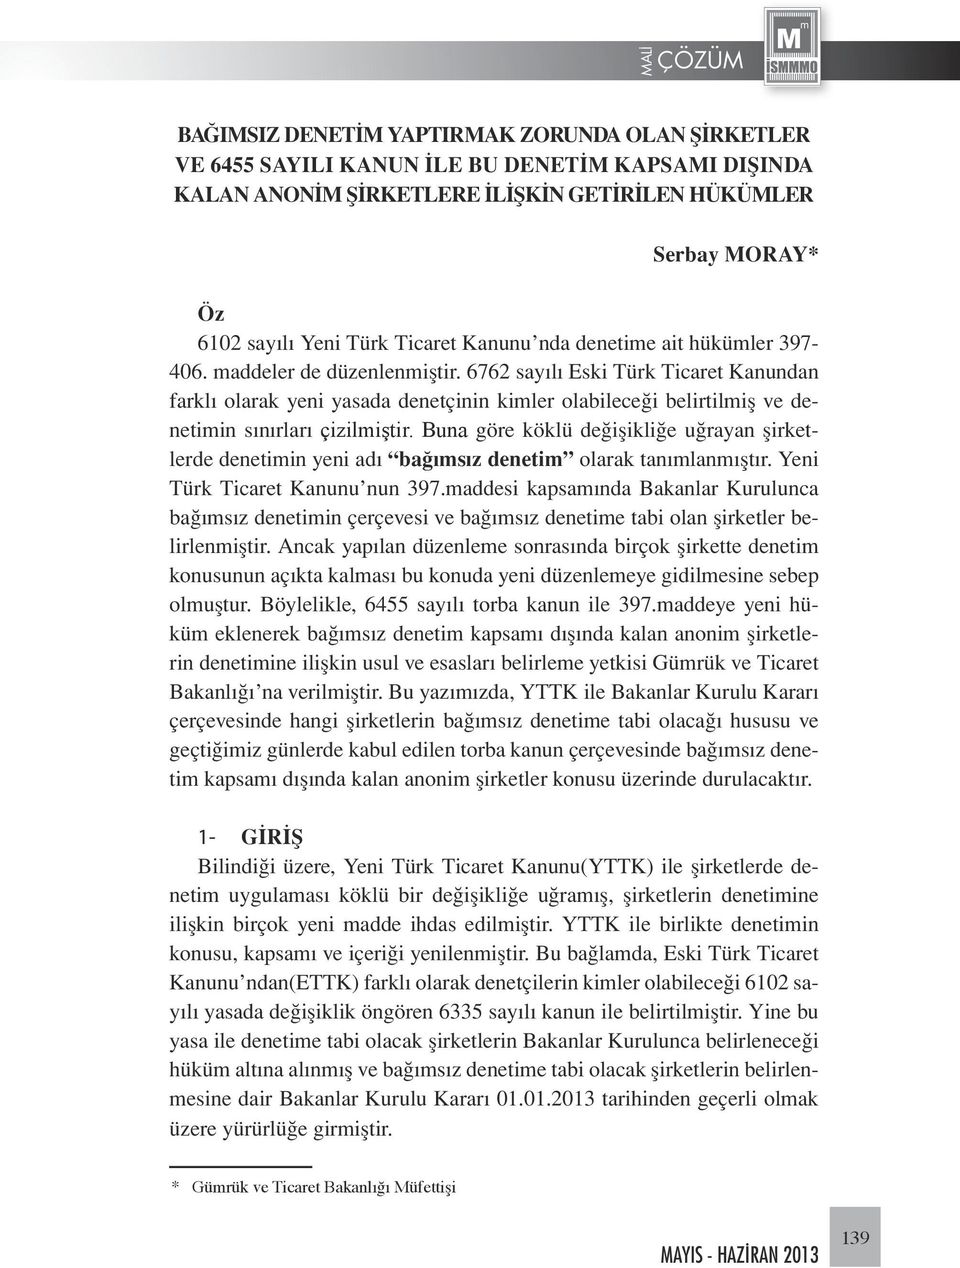 6762 sayılı Eski Türk Ticaret Kanundan farklı olarak yeni yasada denetçinin kimler olabileceği belirtilmiş ve denetimin sınırları çizilmiştir.